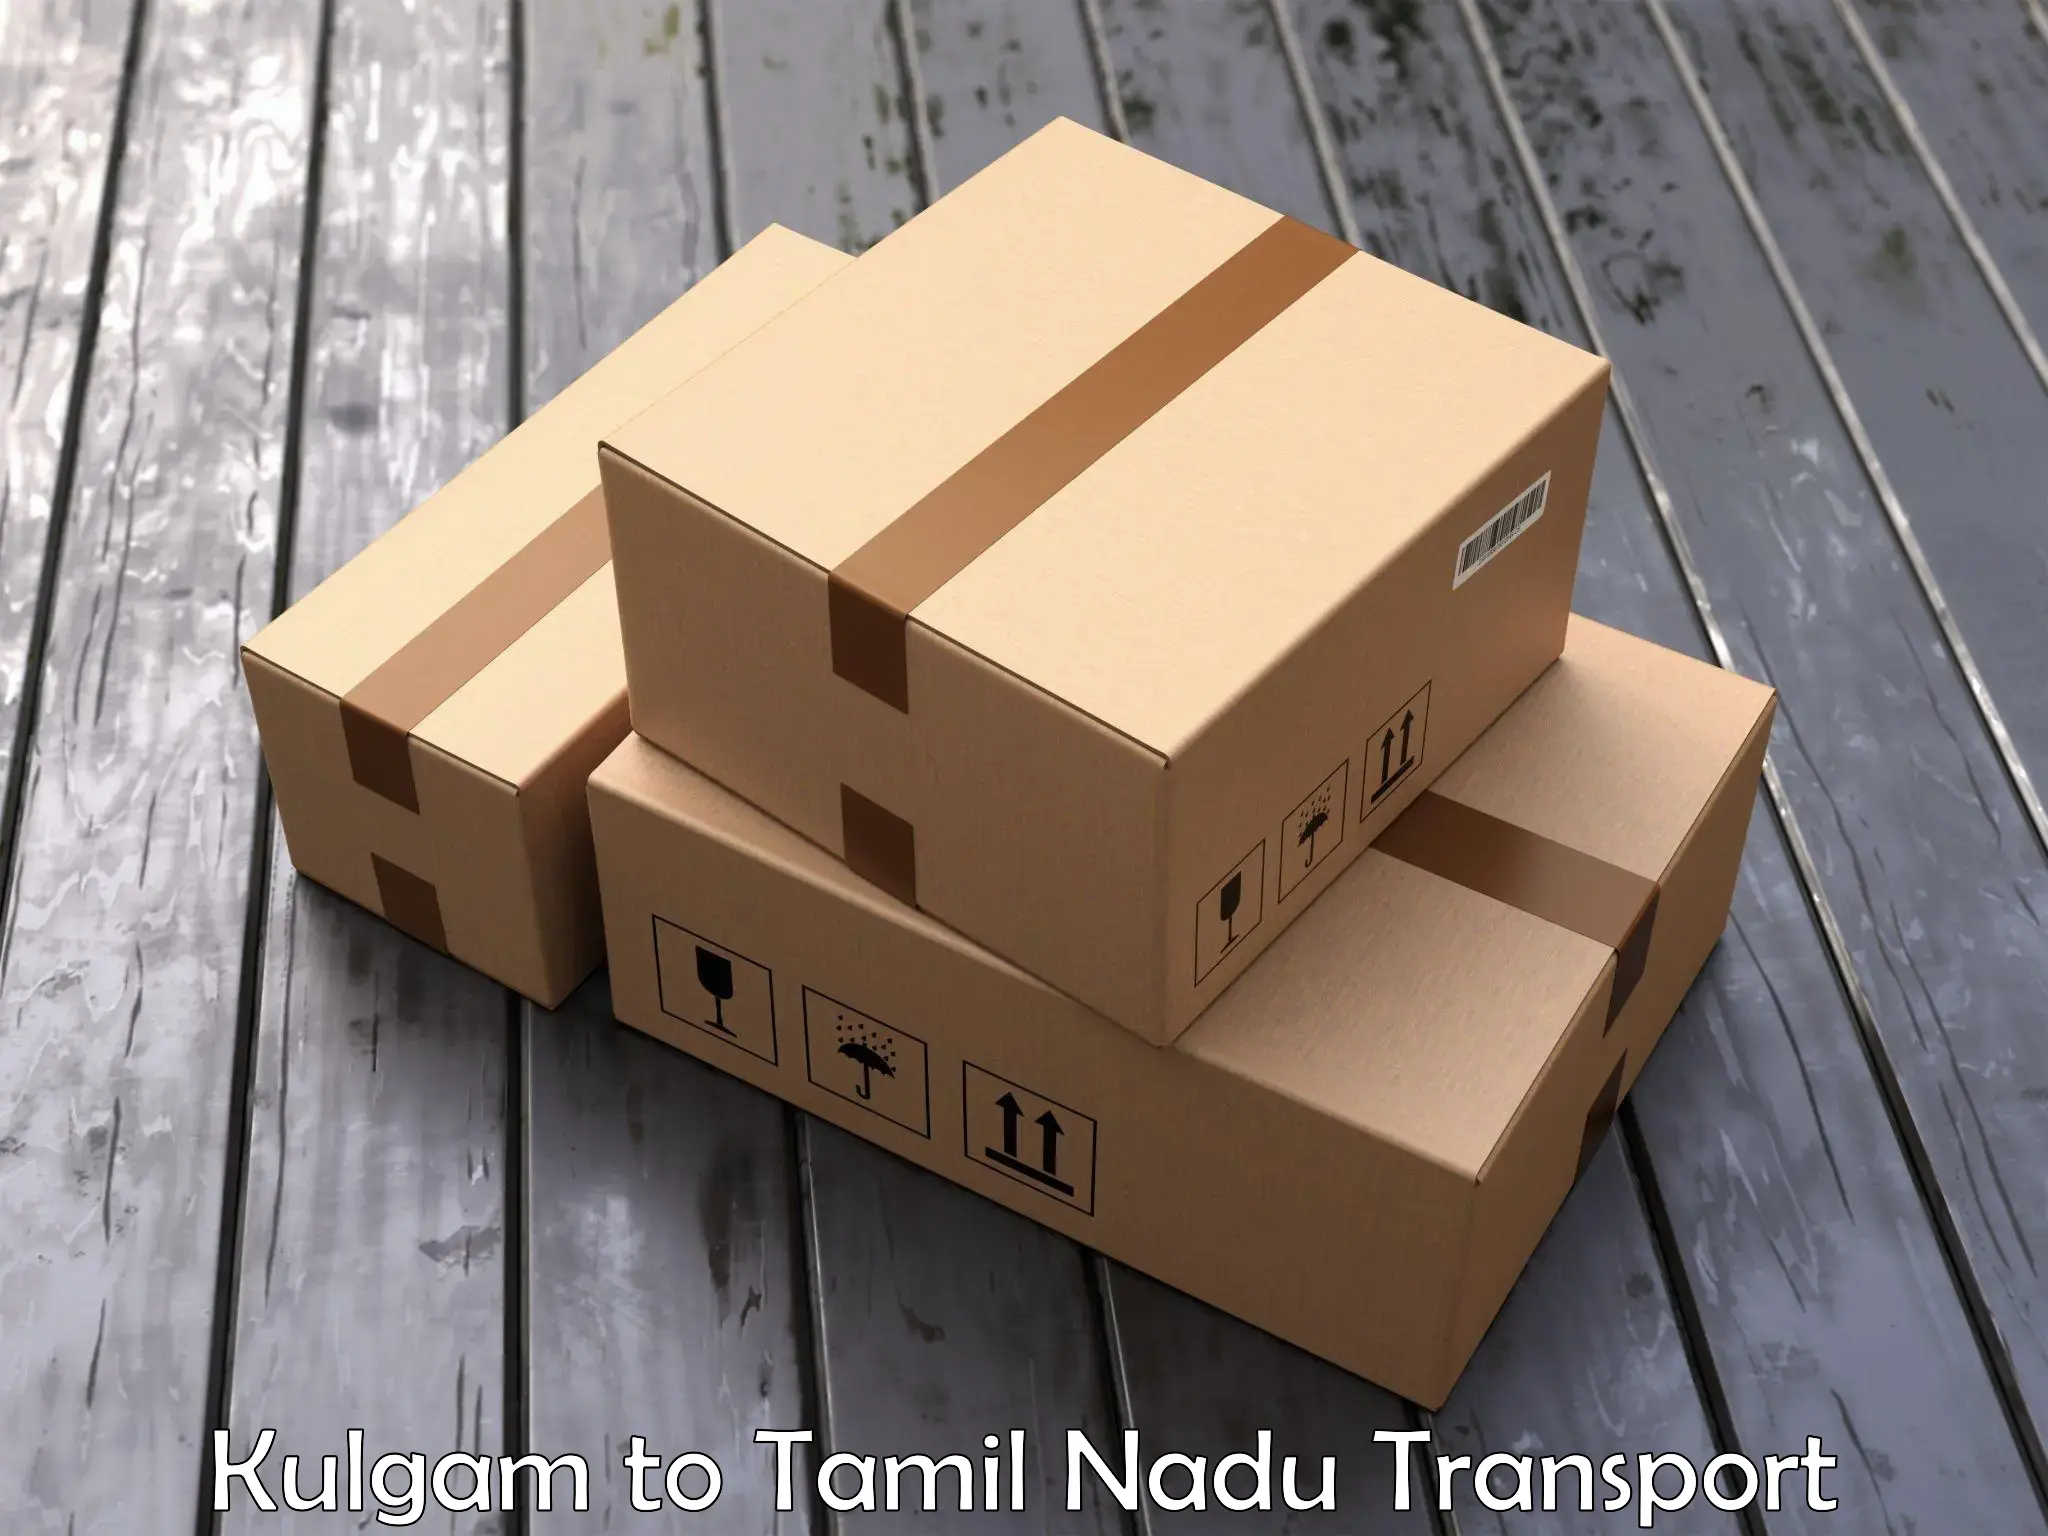 Part load transport service in India Kulgam to The Gandhigram Rural Institute